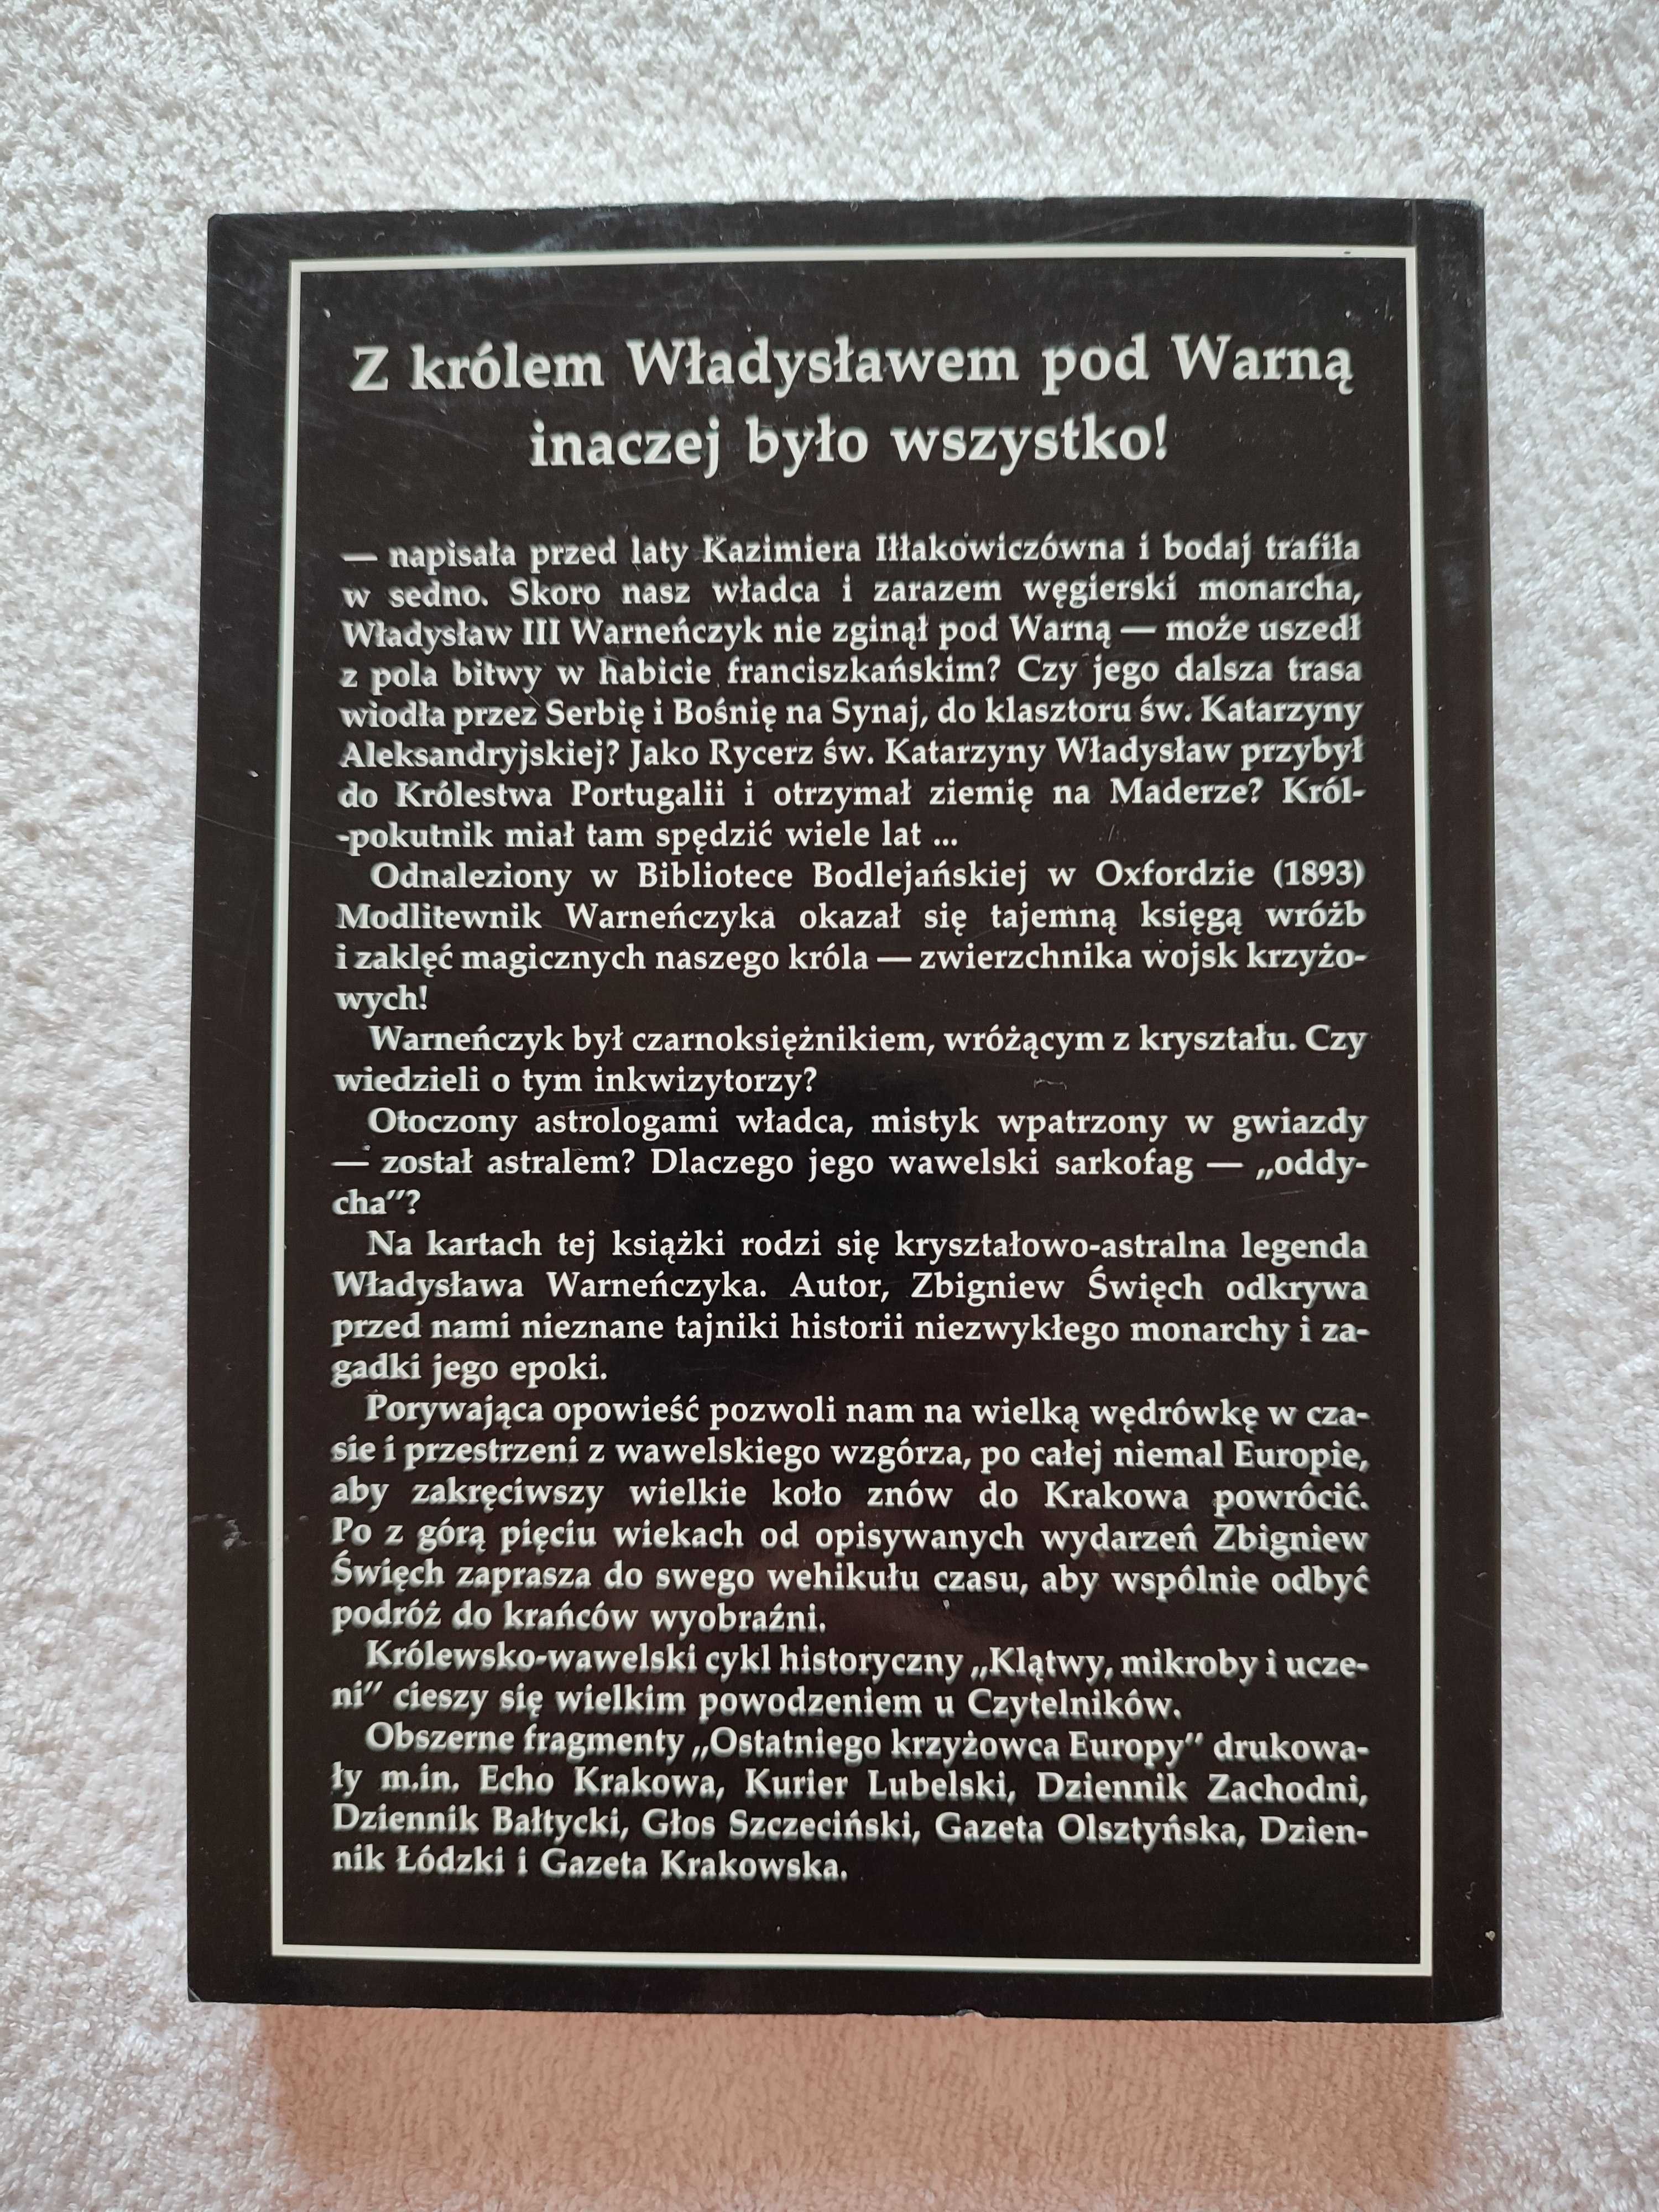 Zbigniew Święch - Ostatni krzyżowiec europy. Autograf autora !!!